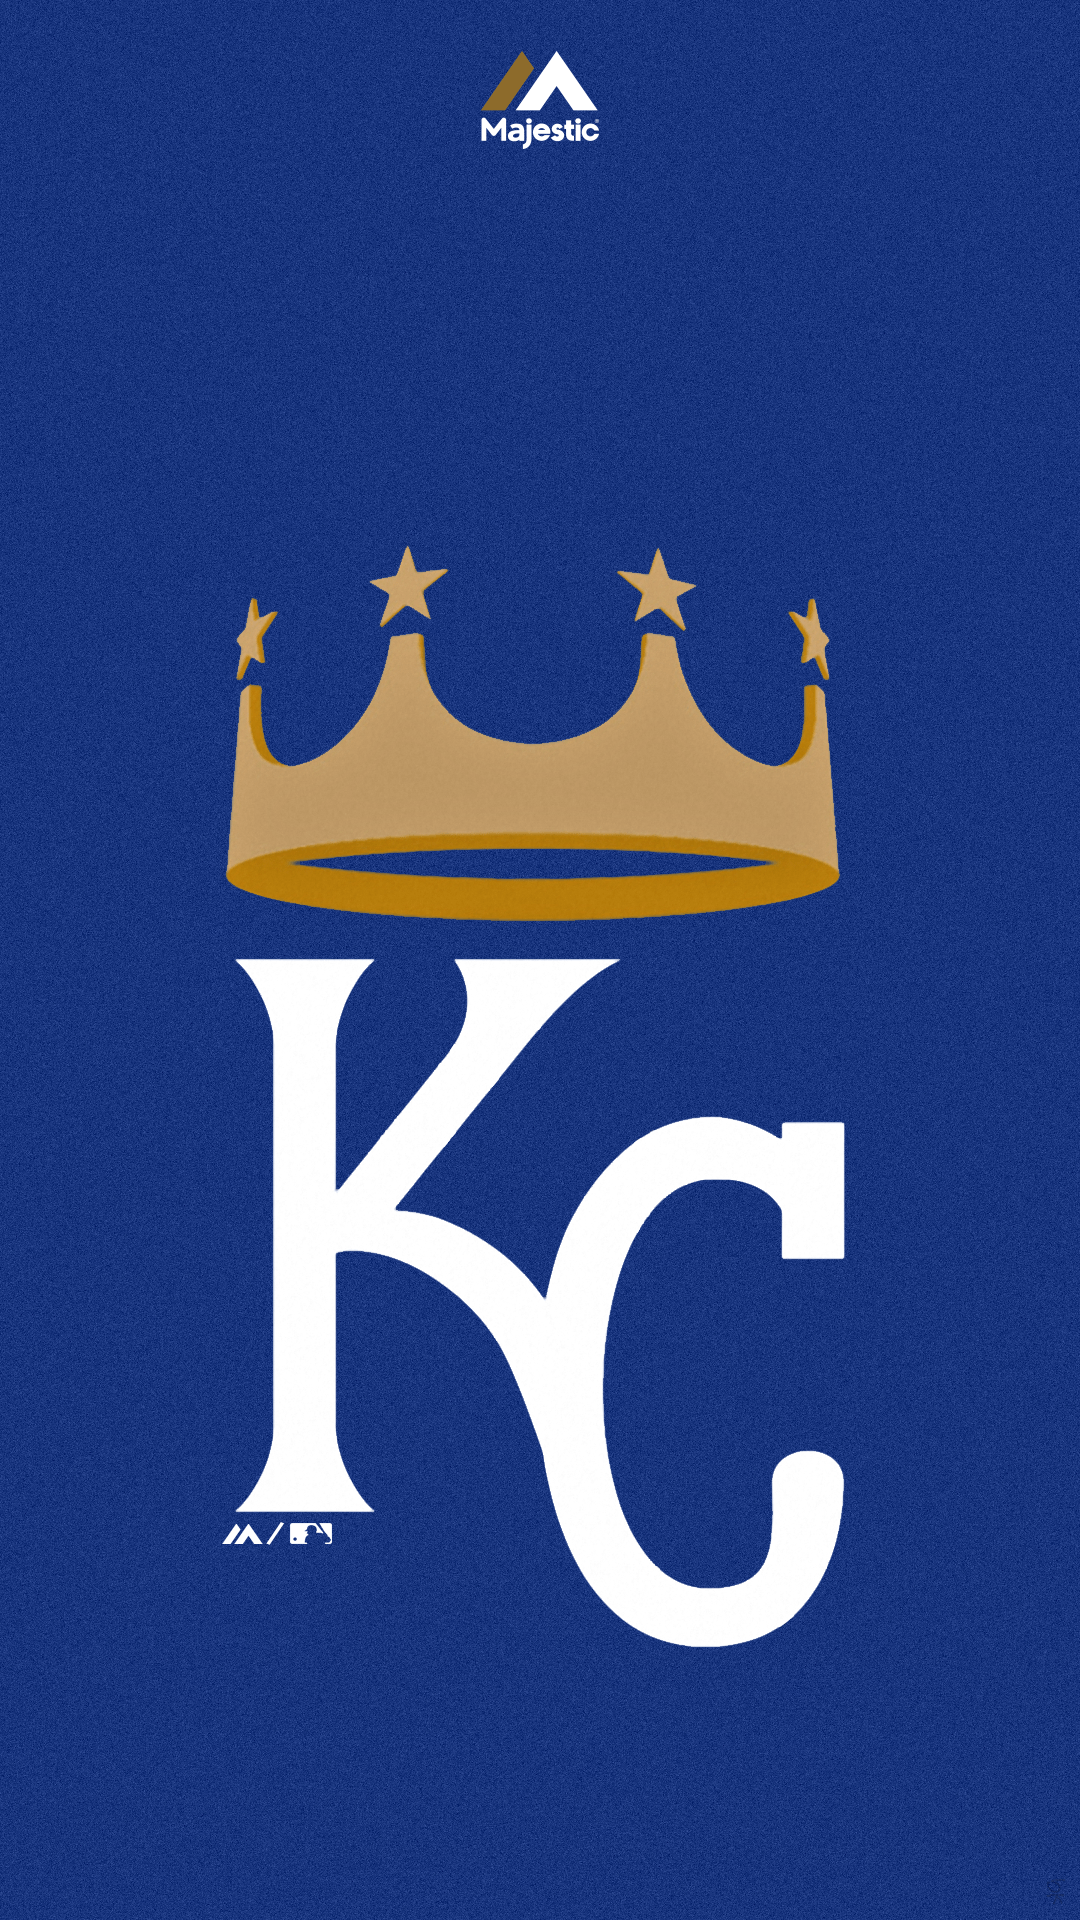 KC Royals wallpaper, 2048x1536, 681203